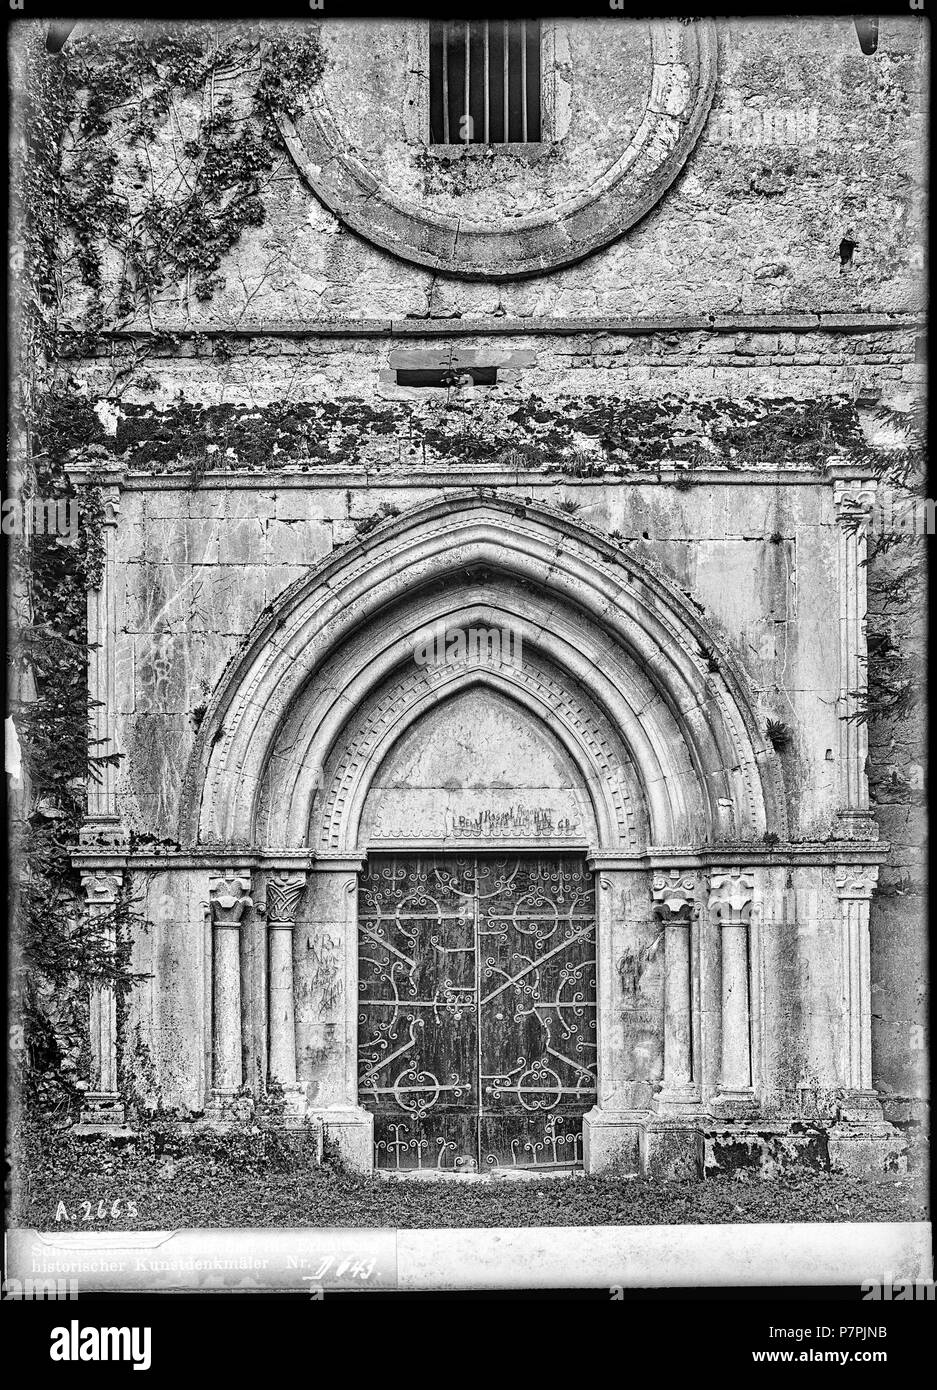 69 CH-NB - Chéserex, Ancienne Abbaye de Bonmont, Portail, vue d'ensemble - Collection Max van Berchem - EAD-7230 Stock Photo